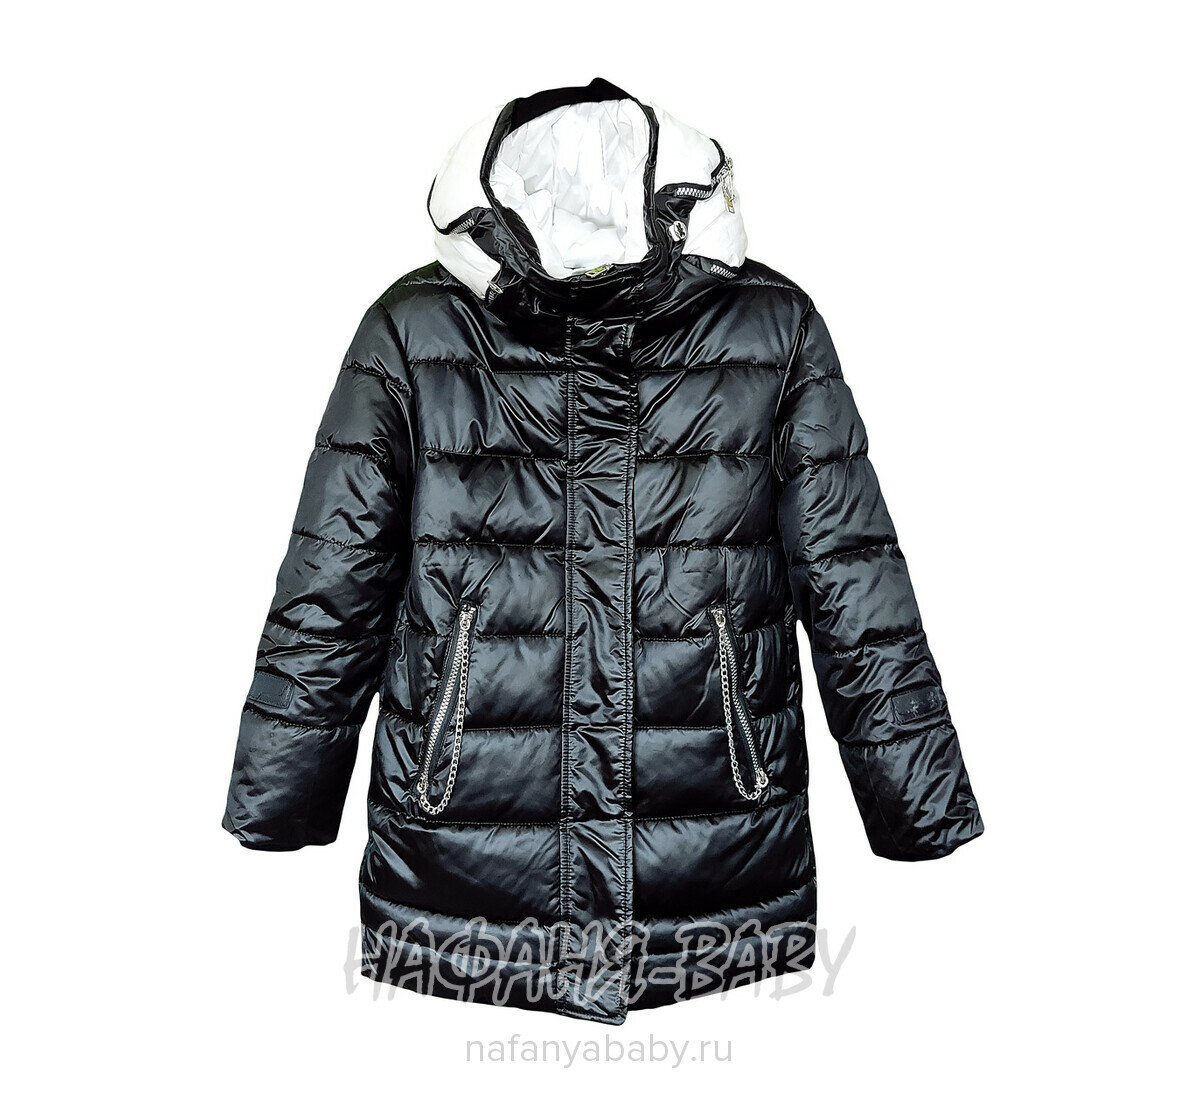 Зимняя удлиненная куртка DELFIN-FREE арт: 2137, 10-15 лет, оптом Китай (Пекин)